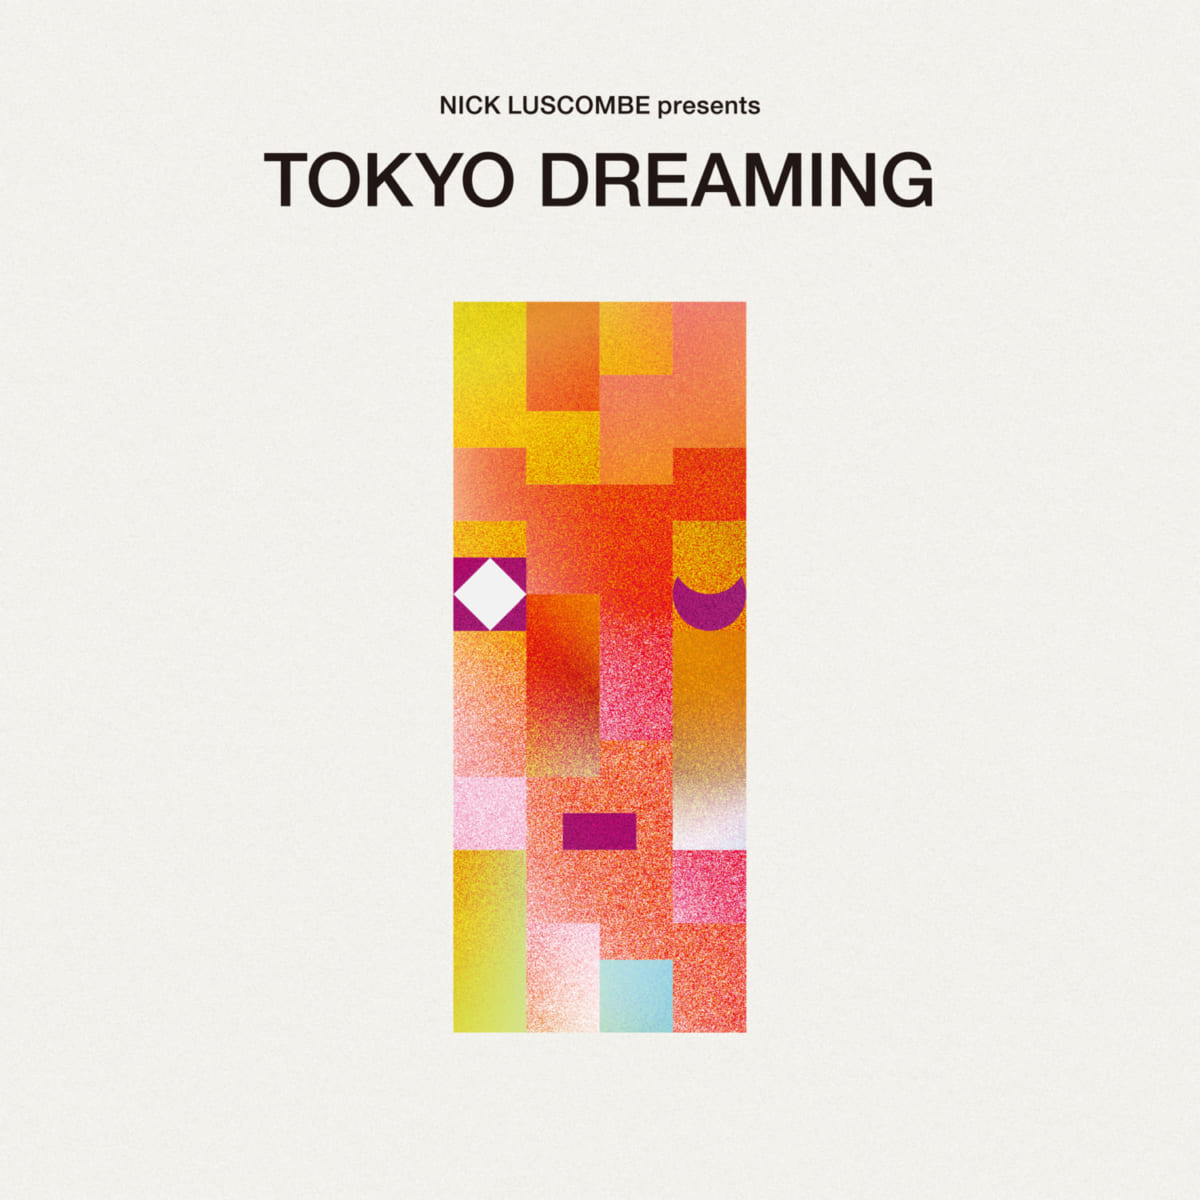 コンピレーション・アルバム『Nick Luscombe presents TOKYO DREAMING』